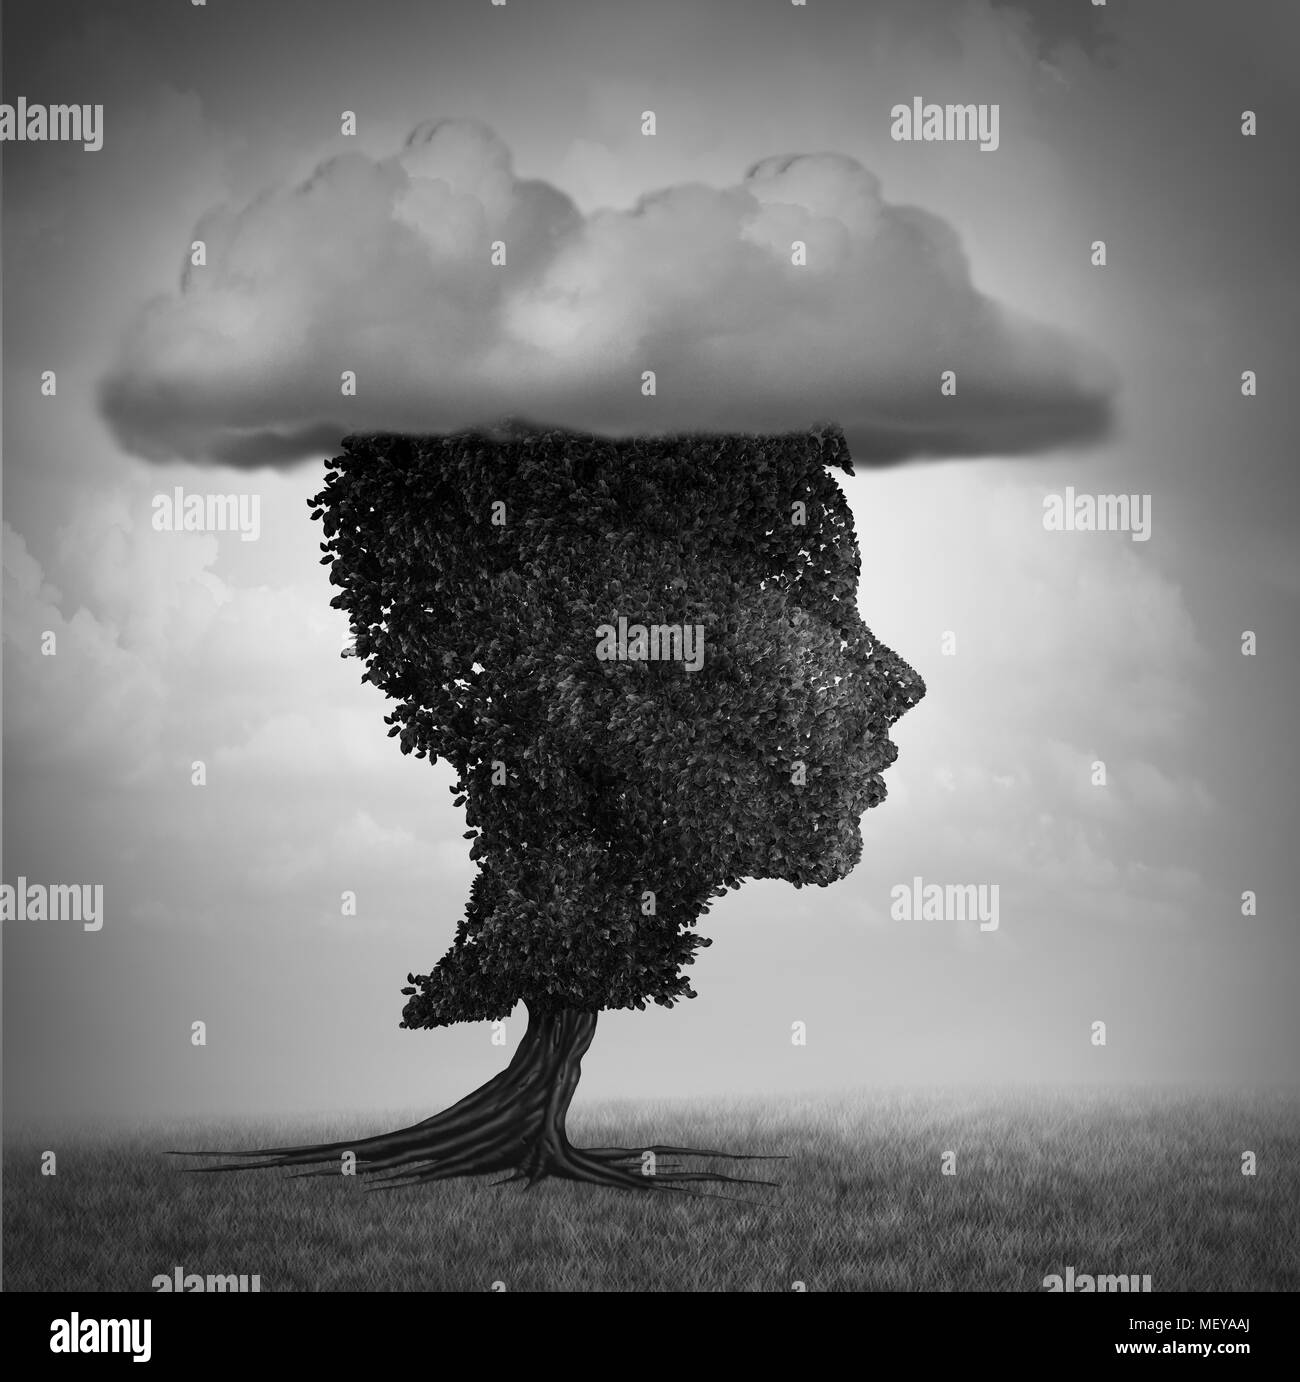 Psychologie de l'enfant la dépression et le chagrin de la petite enfance comme un deprerssed kid se présentant sous forme d'un arbre avec un nuage en tant que psychologique. Banque D'Images